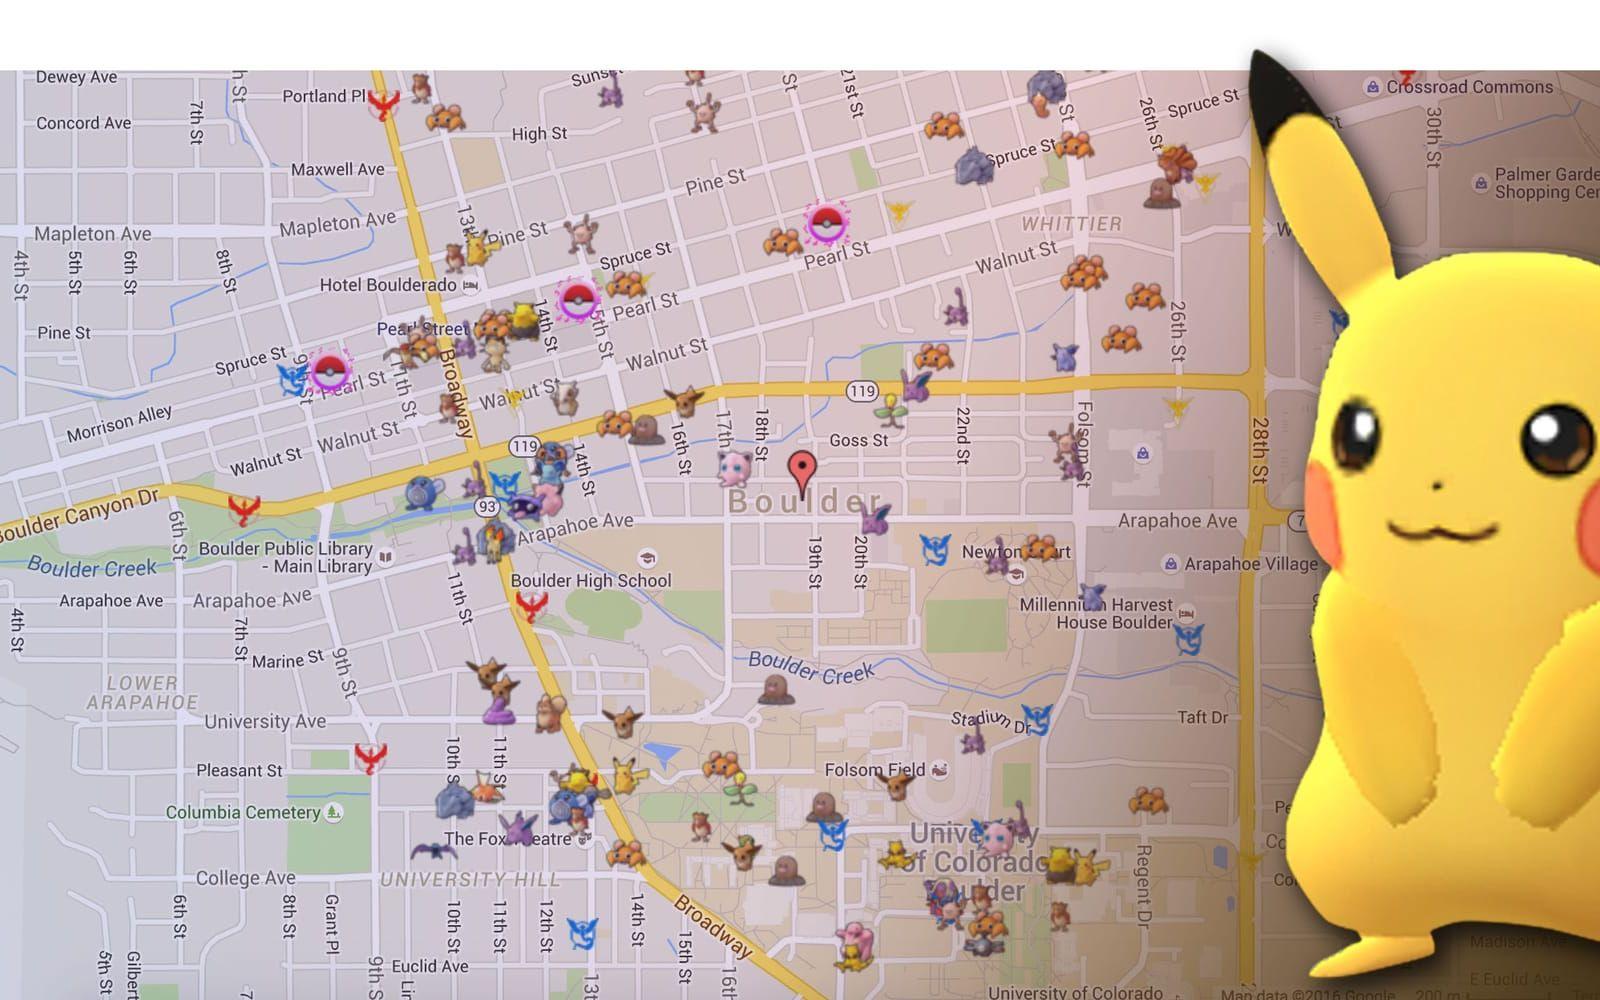 Klicka vidare för att läsa om kartorna som kan hjälpa dig att hitta Pokémon-figurer.